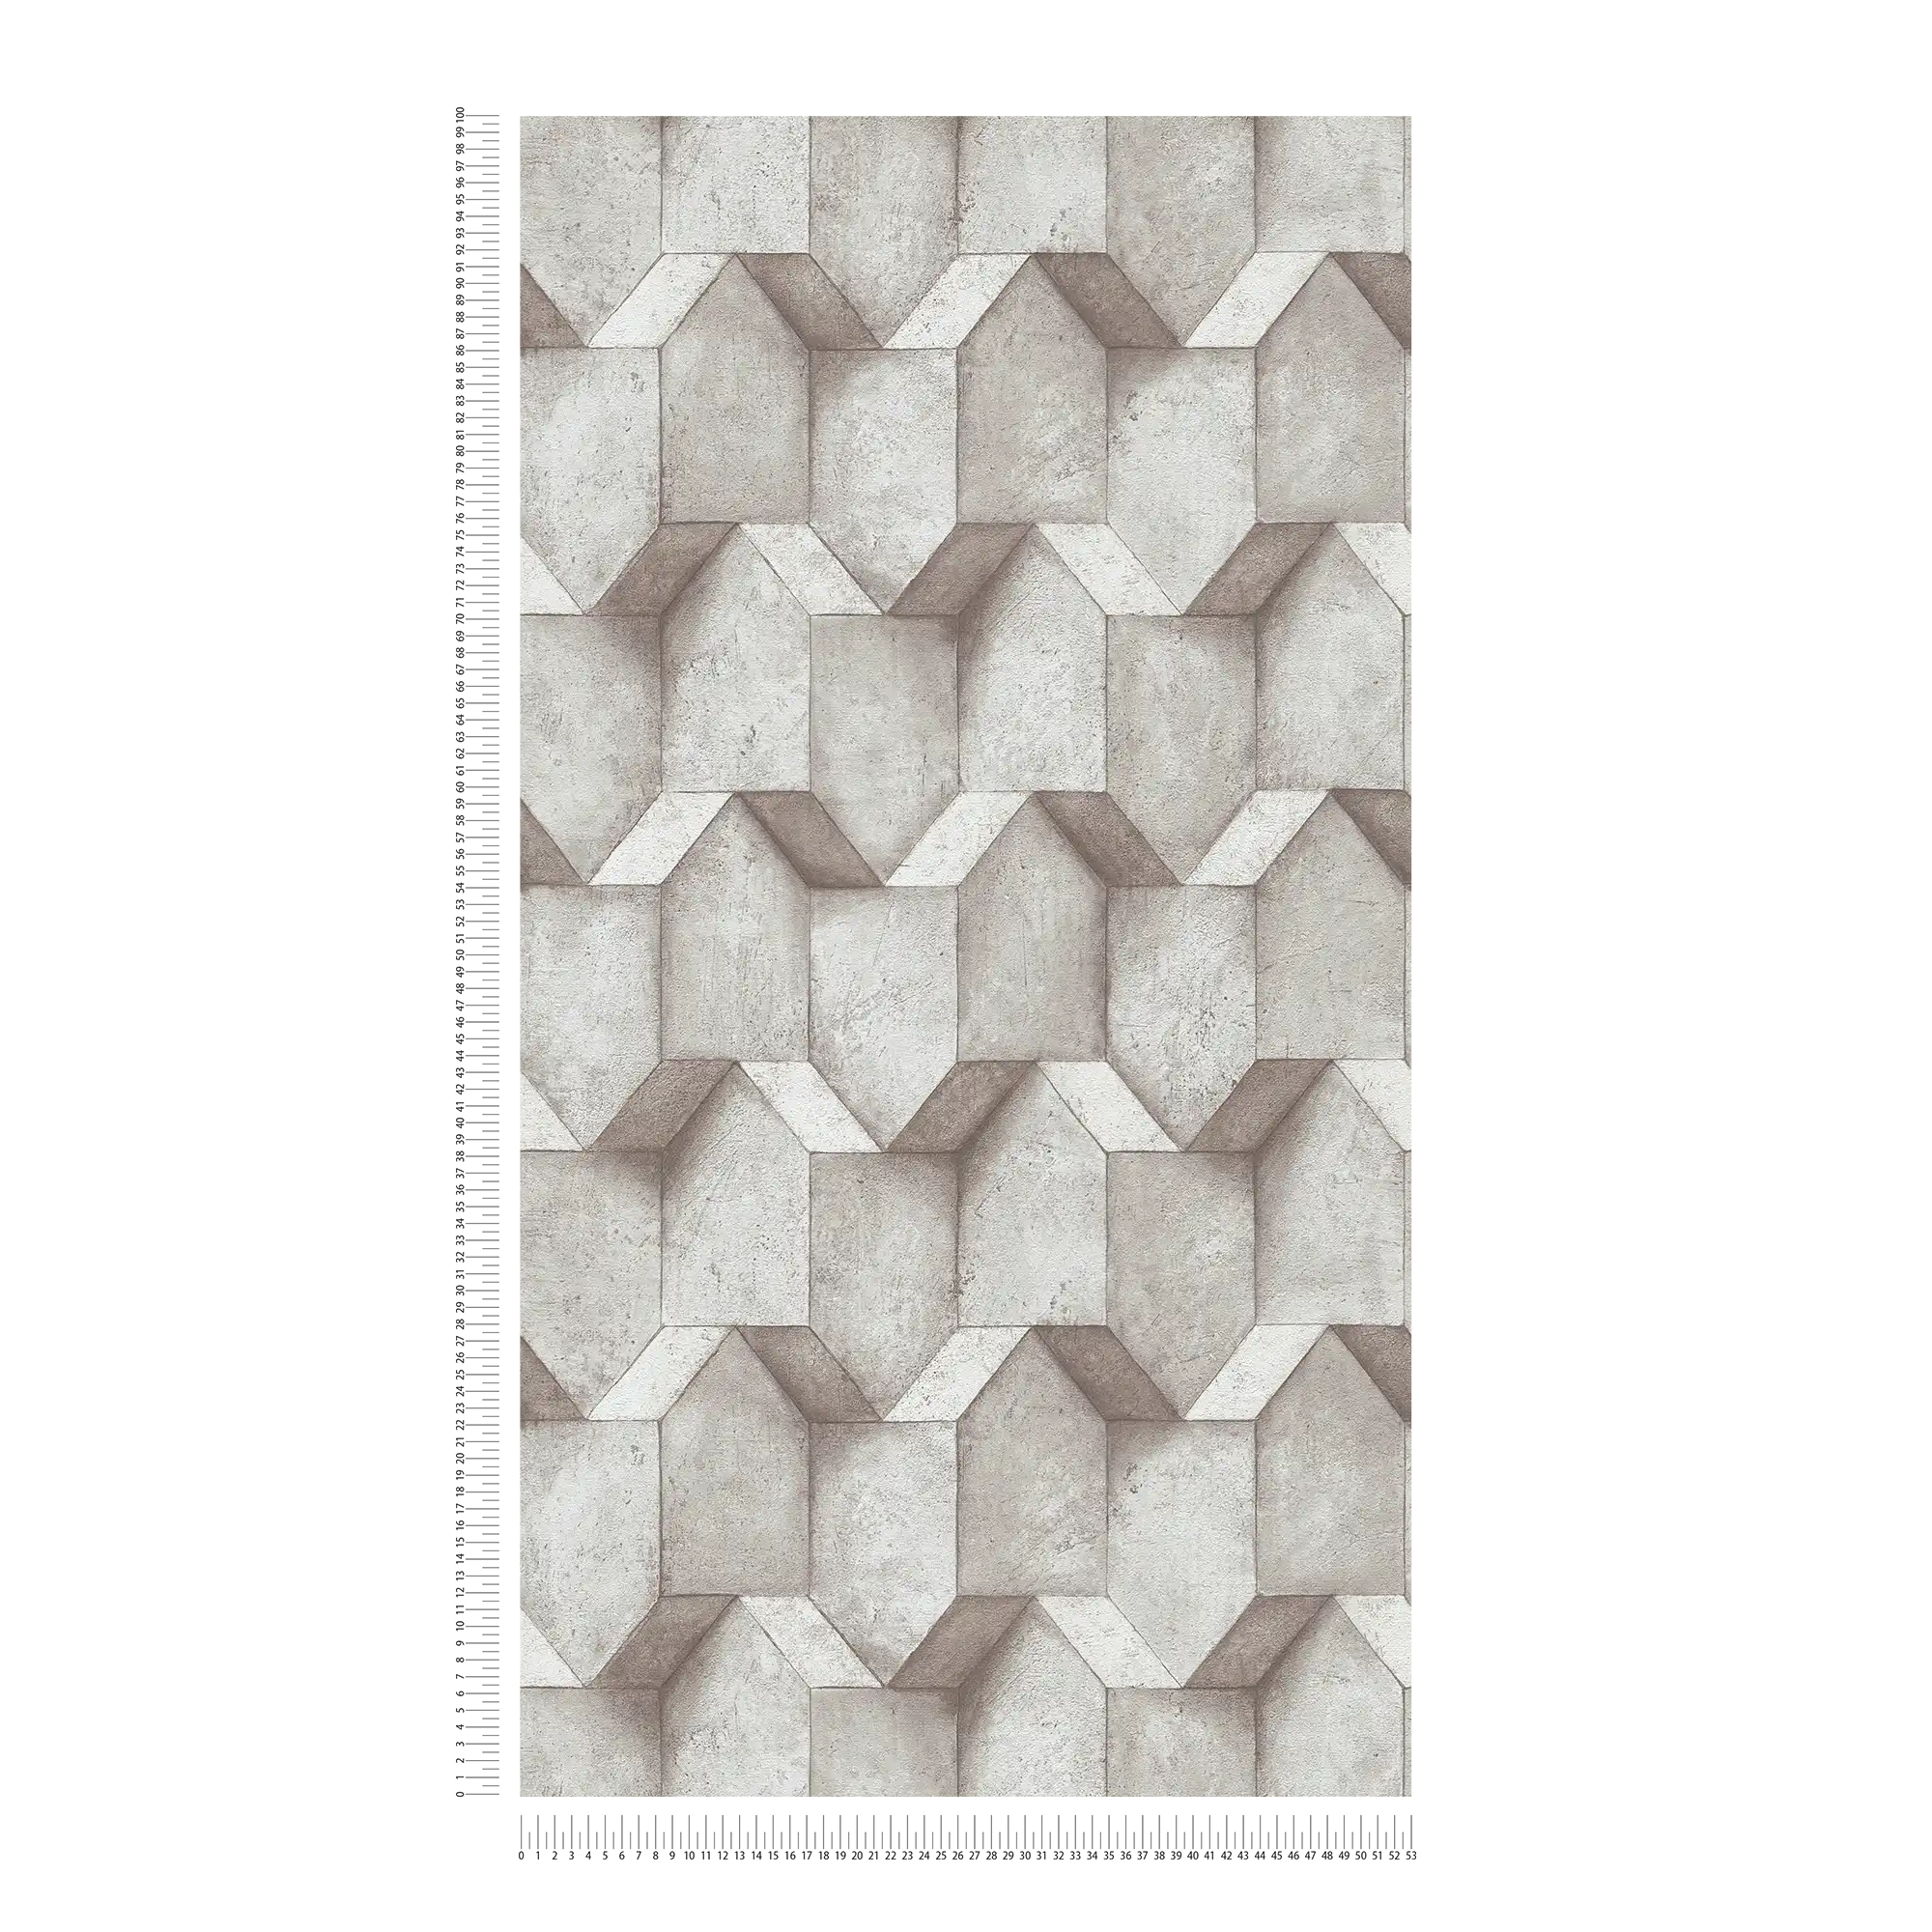             3D wallpaper greige with concrete look design - grey, beige
        